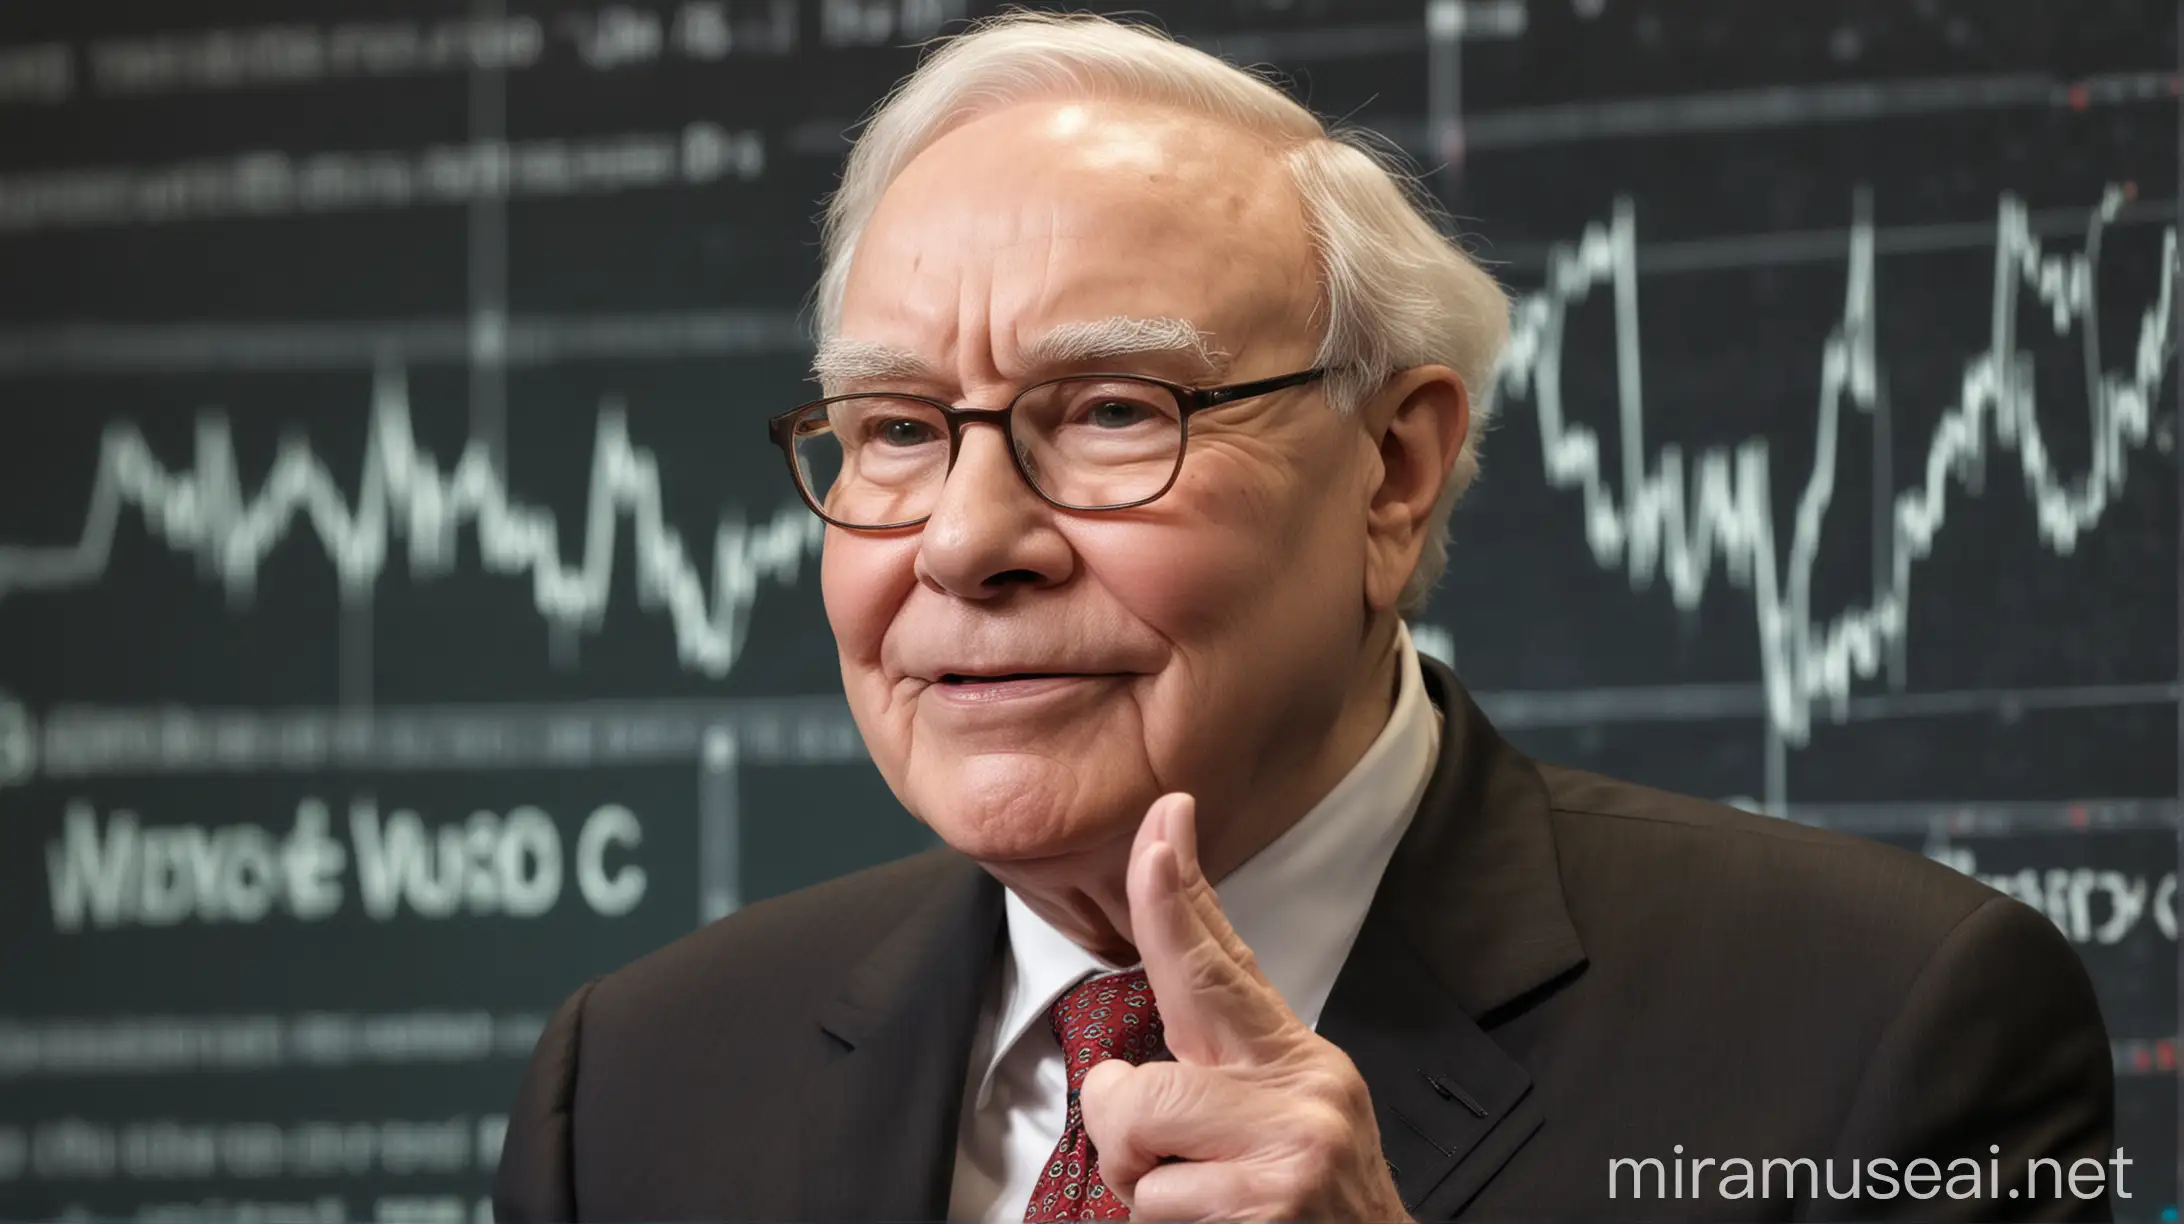 Warren Buffett Analyzing Stock Market Trends